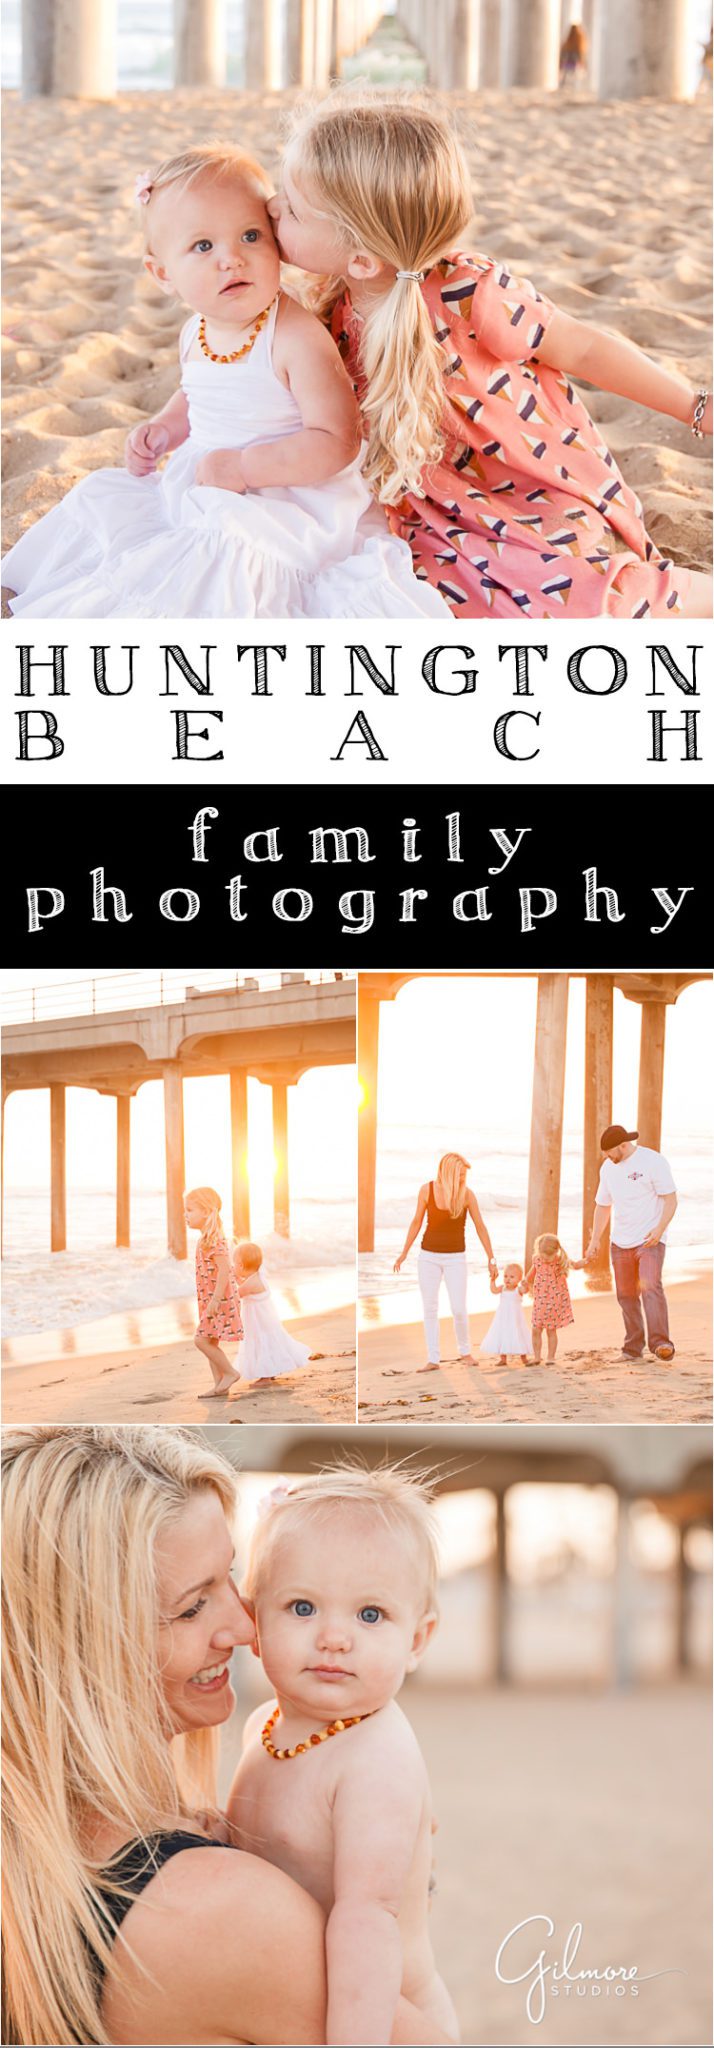 Huntington-Beach-family-photographer